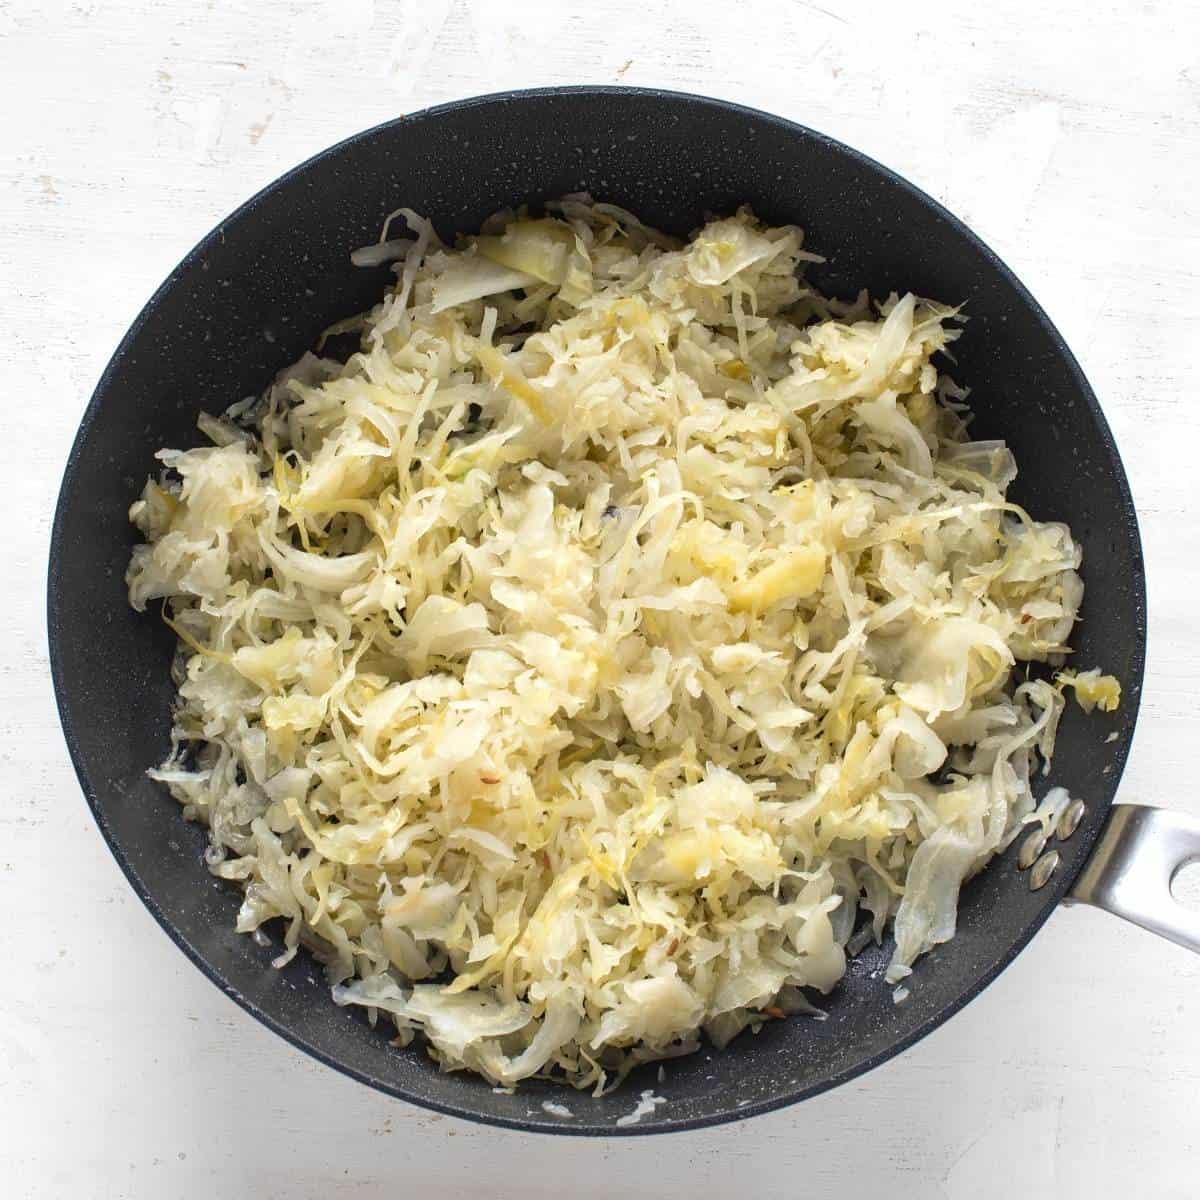 Sauerkraut is frying in a pan.